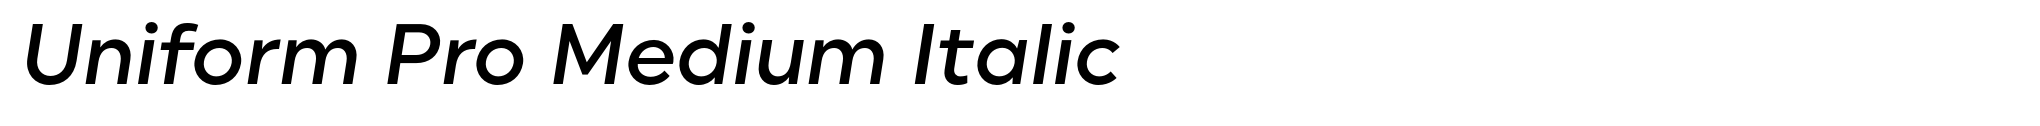 Uniform Pro Medium Italic image